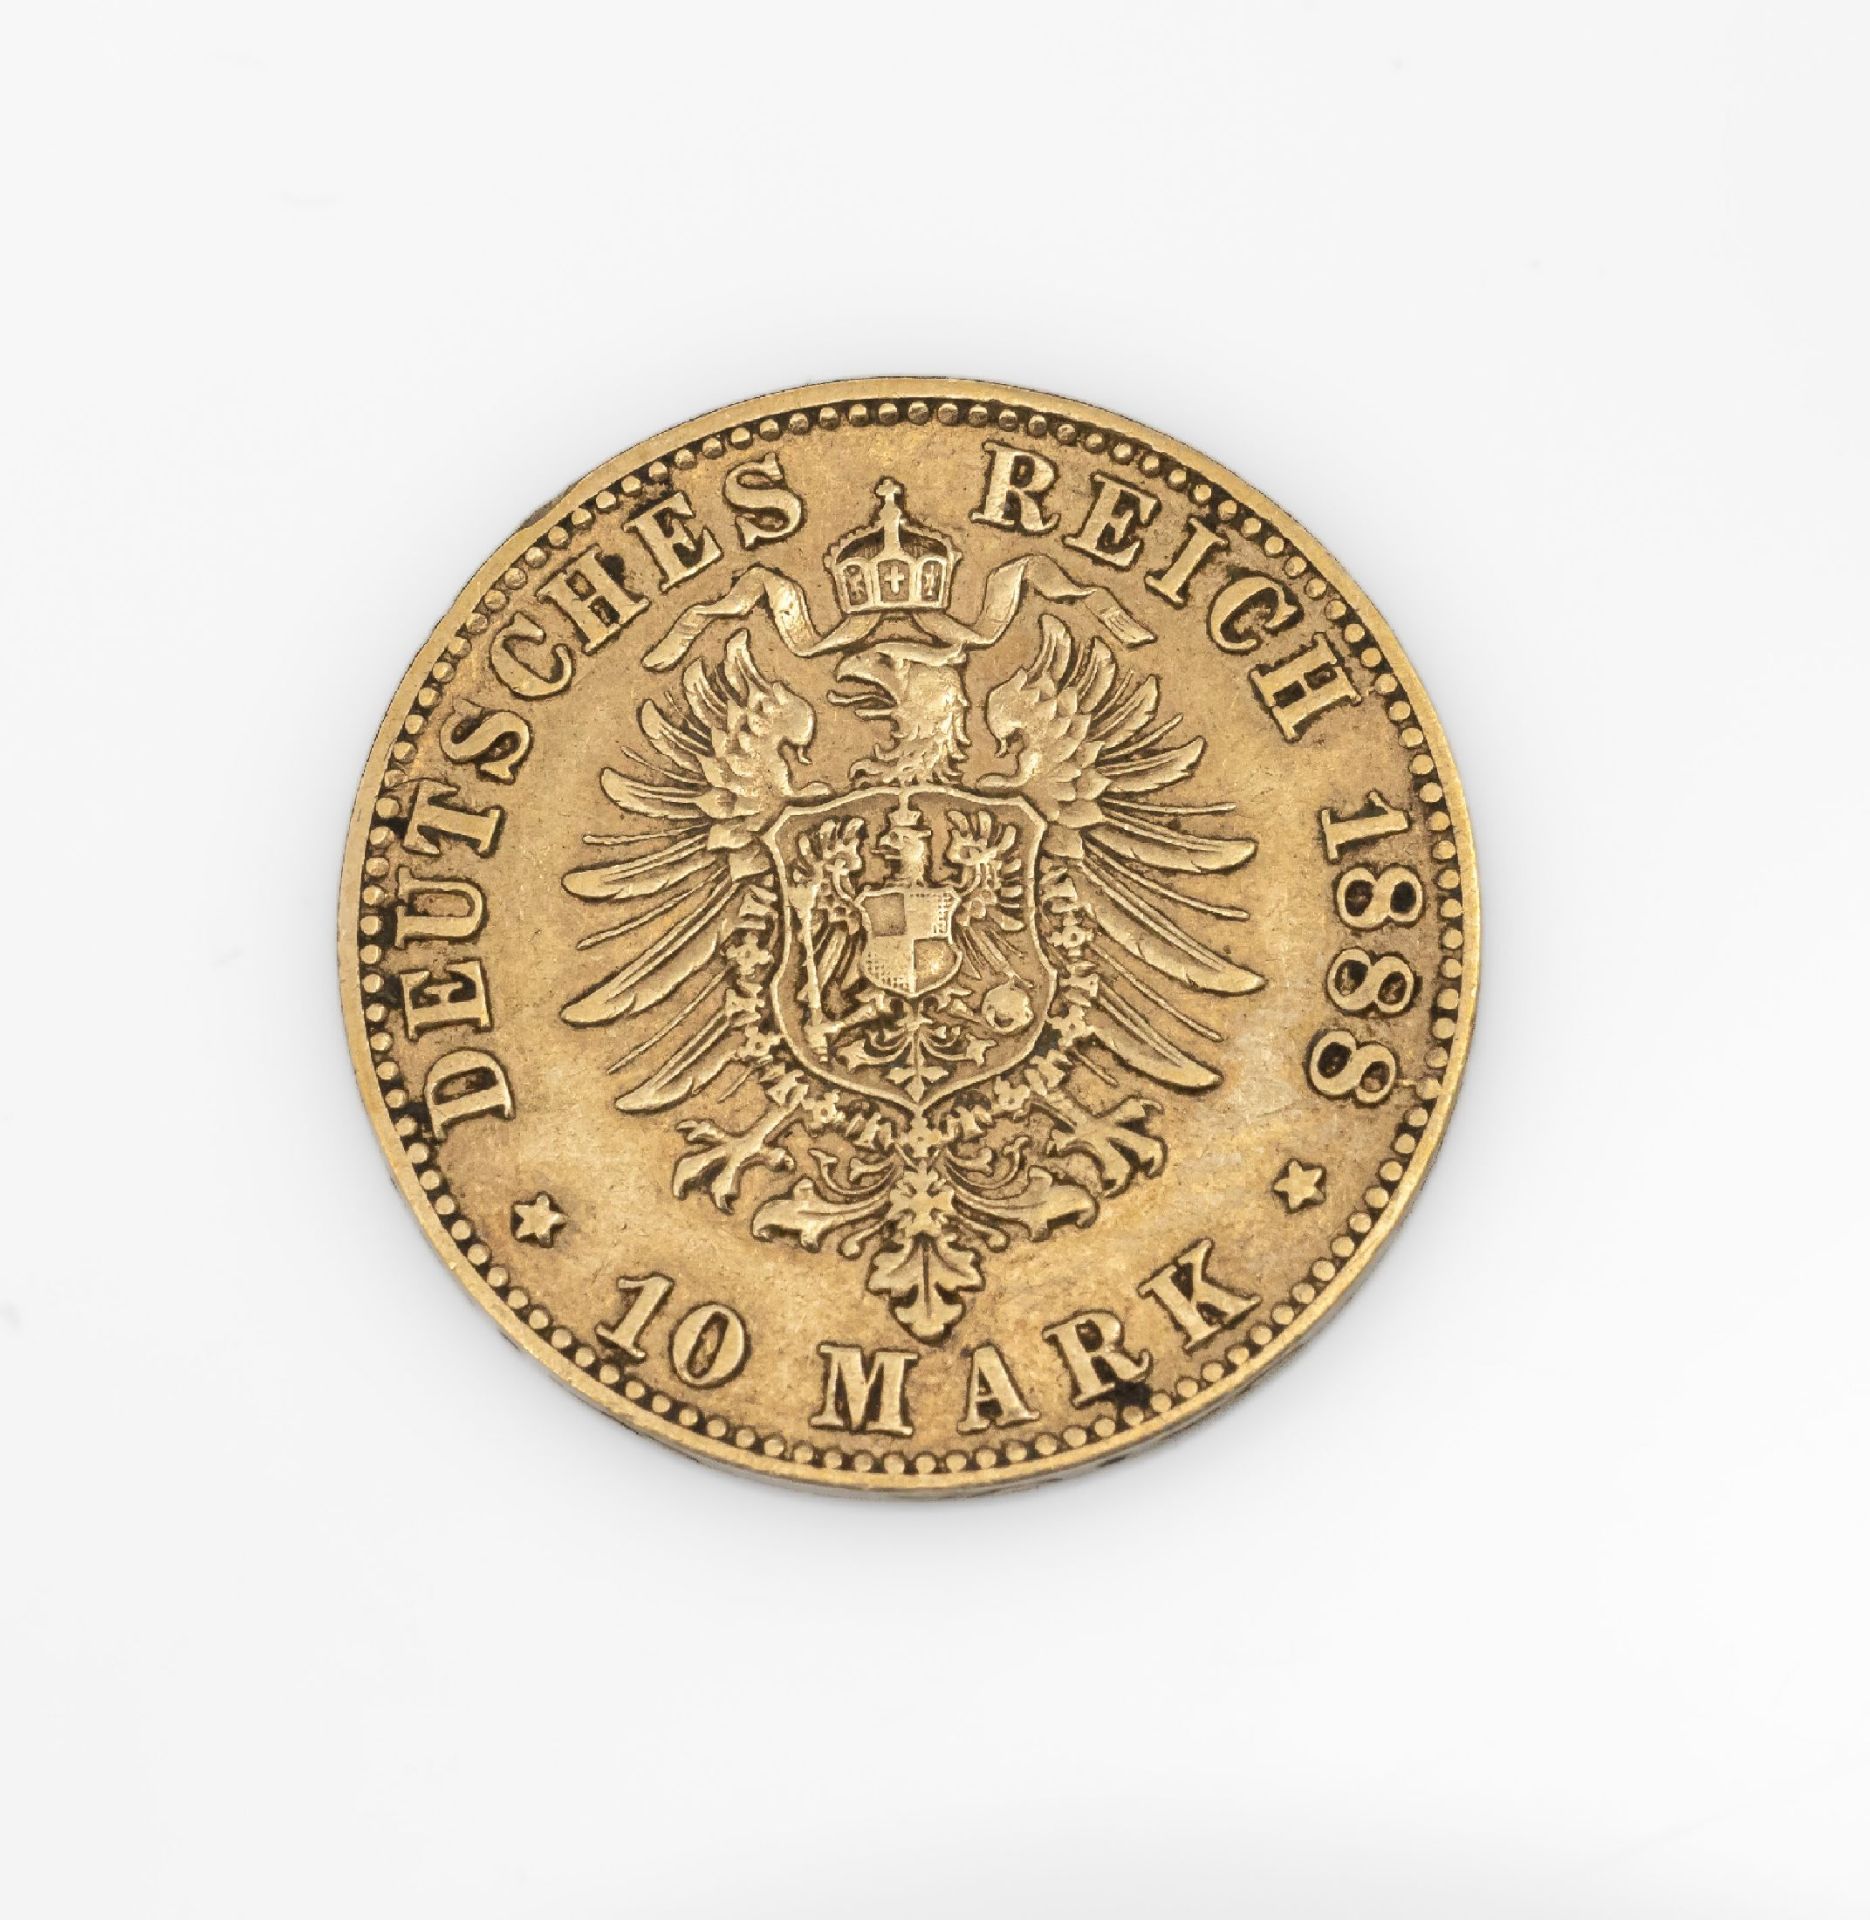 Goldmünze 10 Mark Deutsches Reich 1888, Karl König von - Image 2 of 2